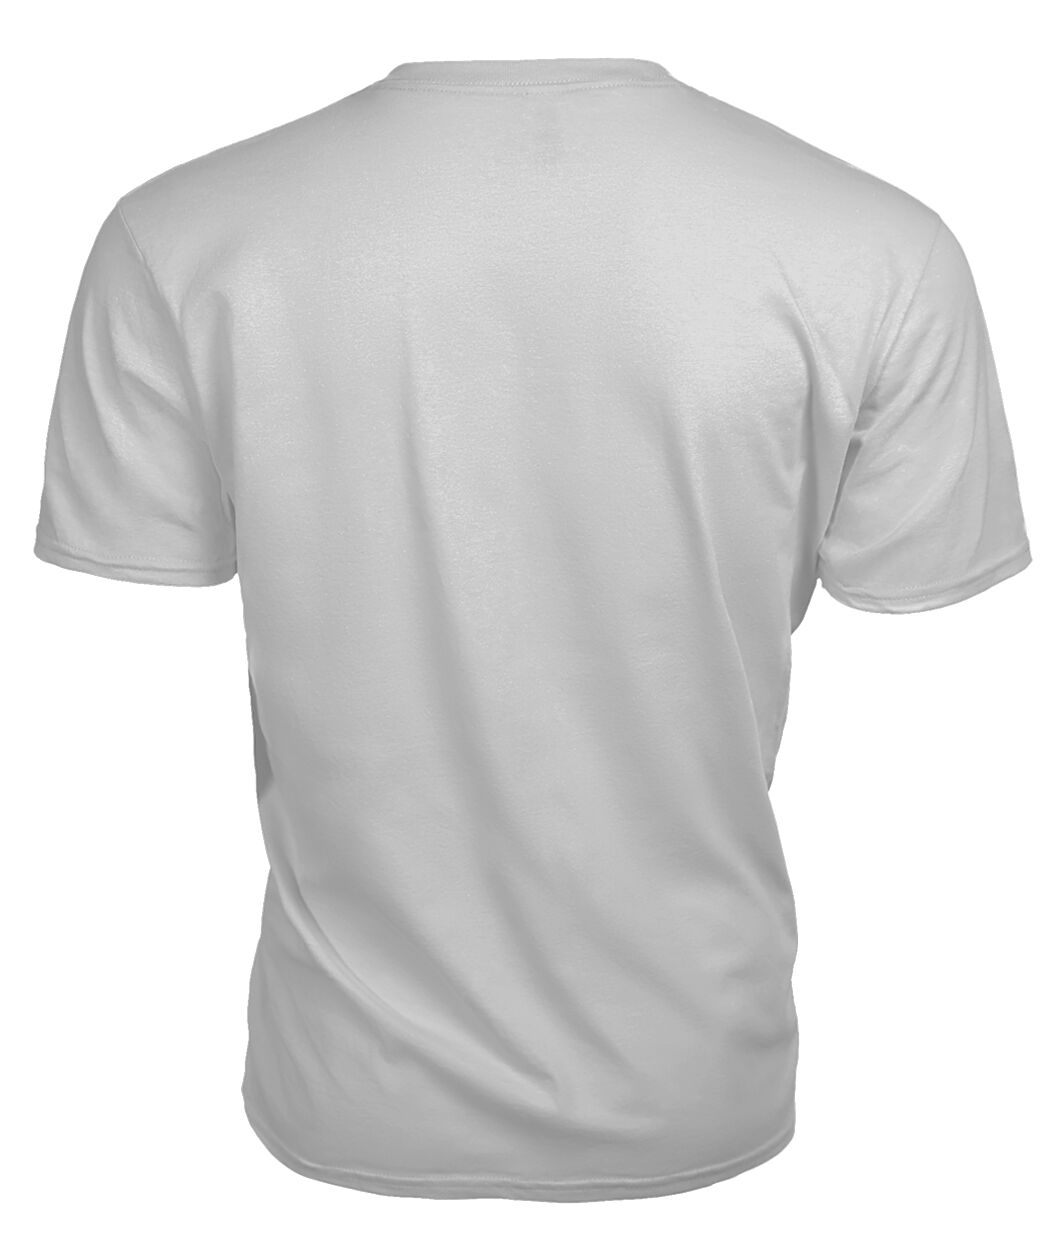 MacDuff Family Tartan - 2D T-shirt